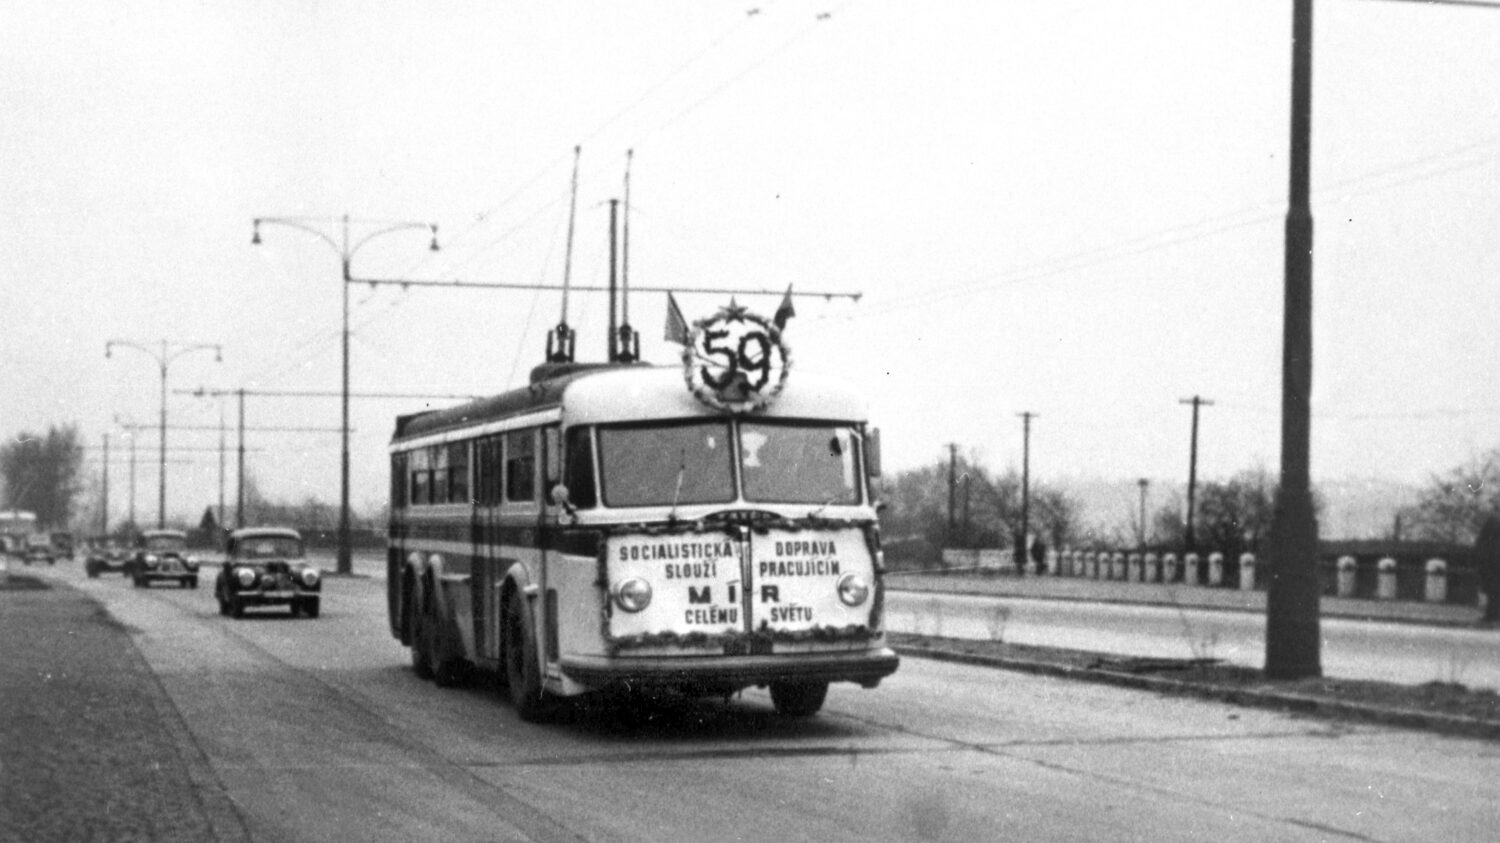 Slavnostní zahájení trolejbusového provozu na lince č. 59 dne 18. 4. 1954. Snímek pochází ze čtyřproudové výpadovky z Prahy na Zbraslav. (zdroj: archiv DPP)